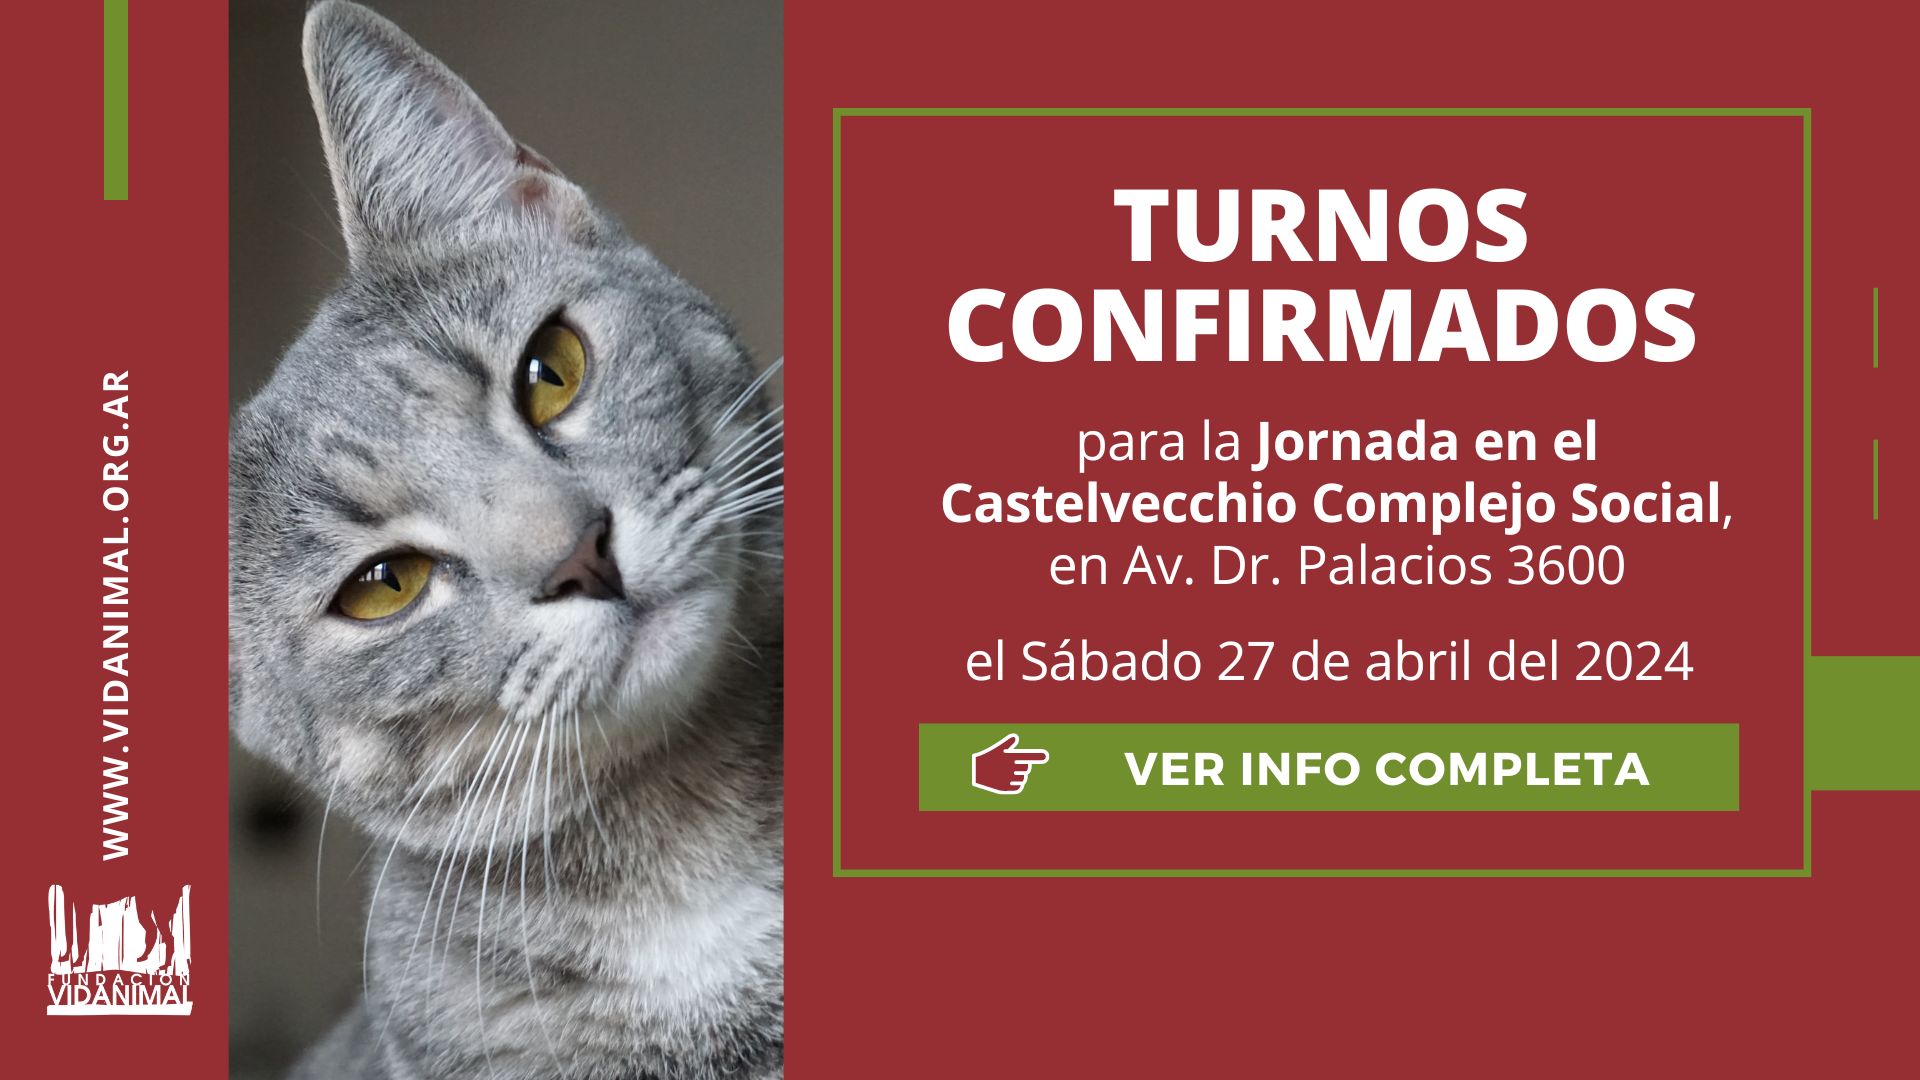 Lista de turnos confirmados: Jornada en el Castelvecchio Complejo Social – Sábado 27 de abril del 2024